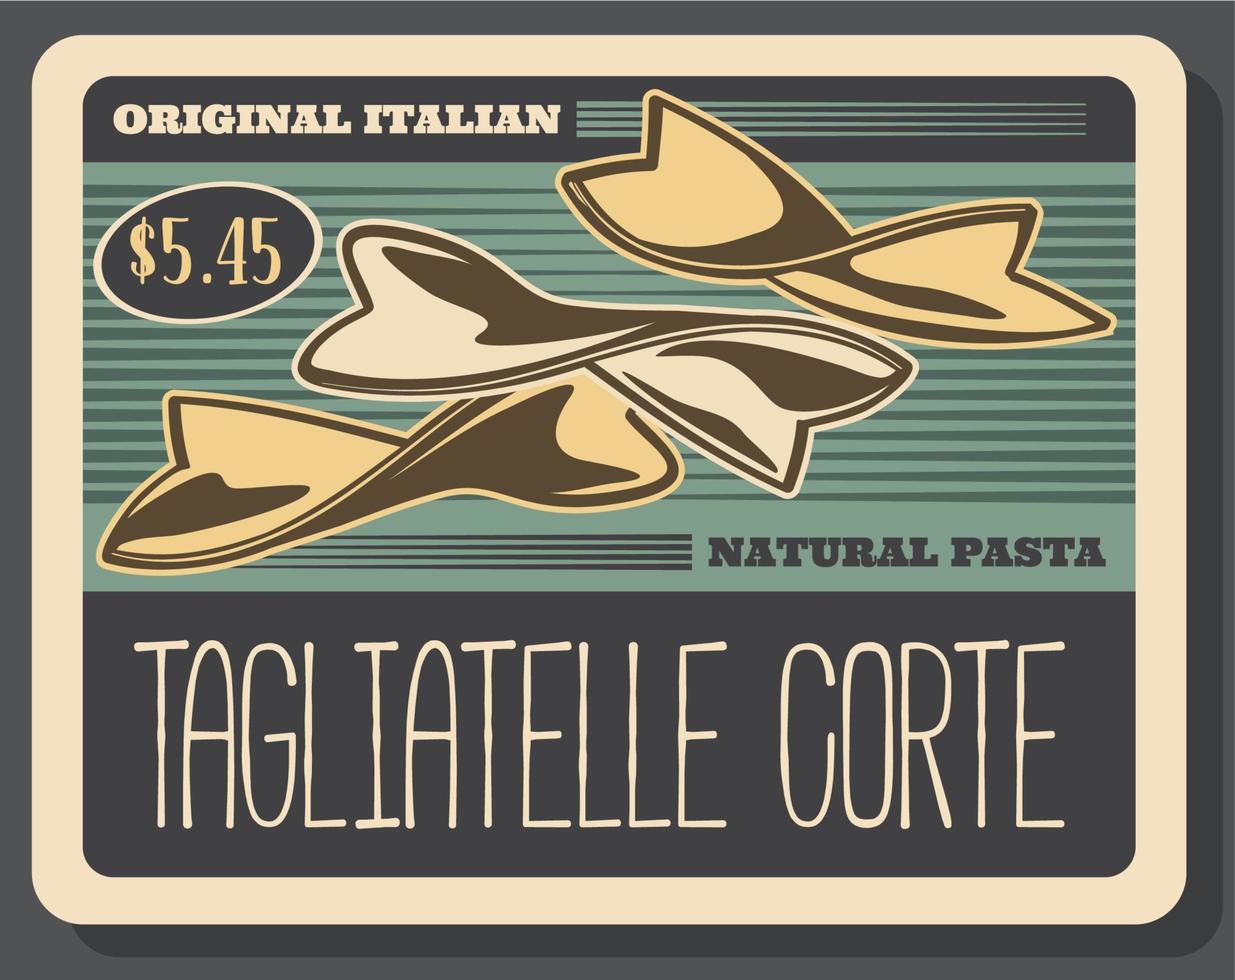 Tagliatelle corte italian pasta, vector